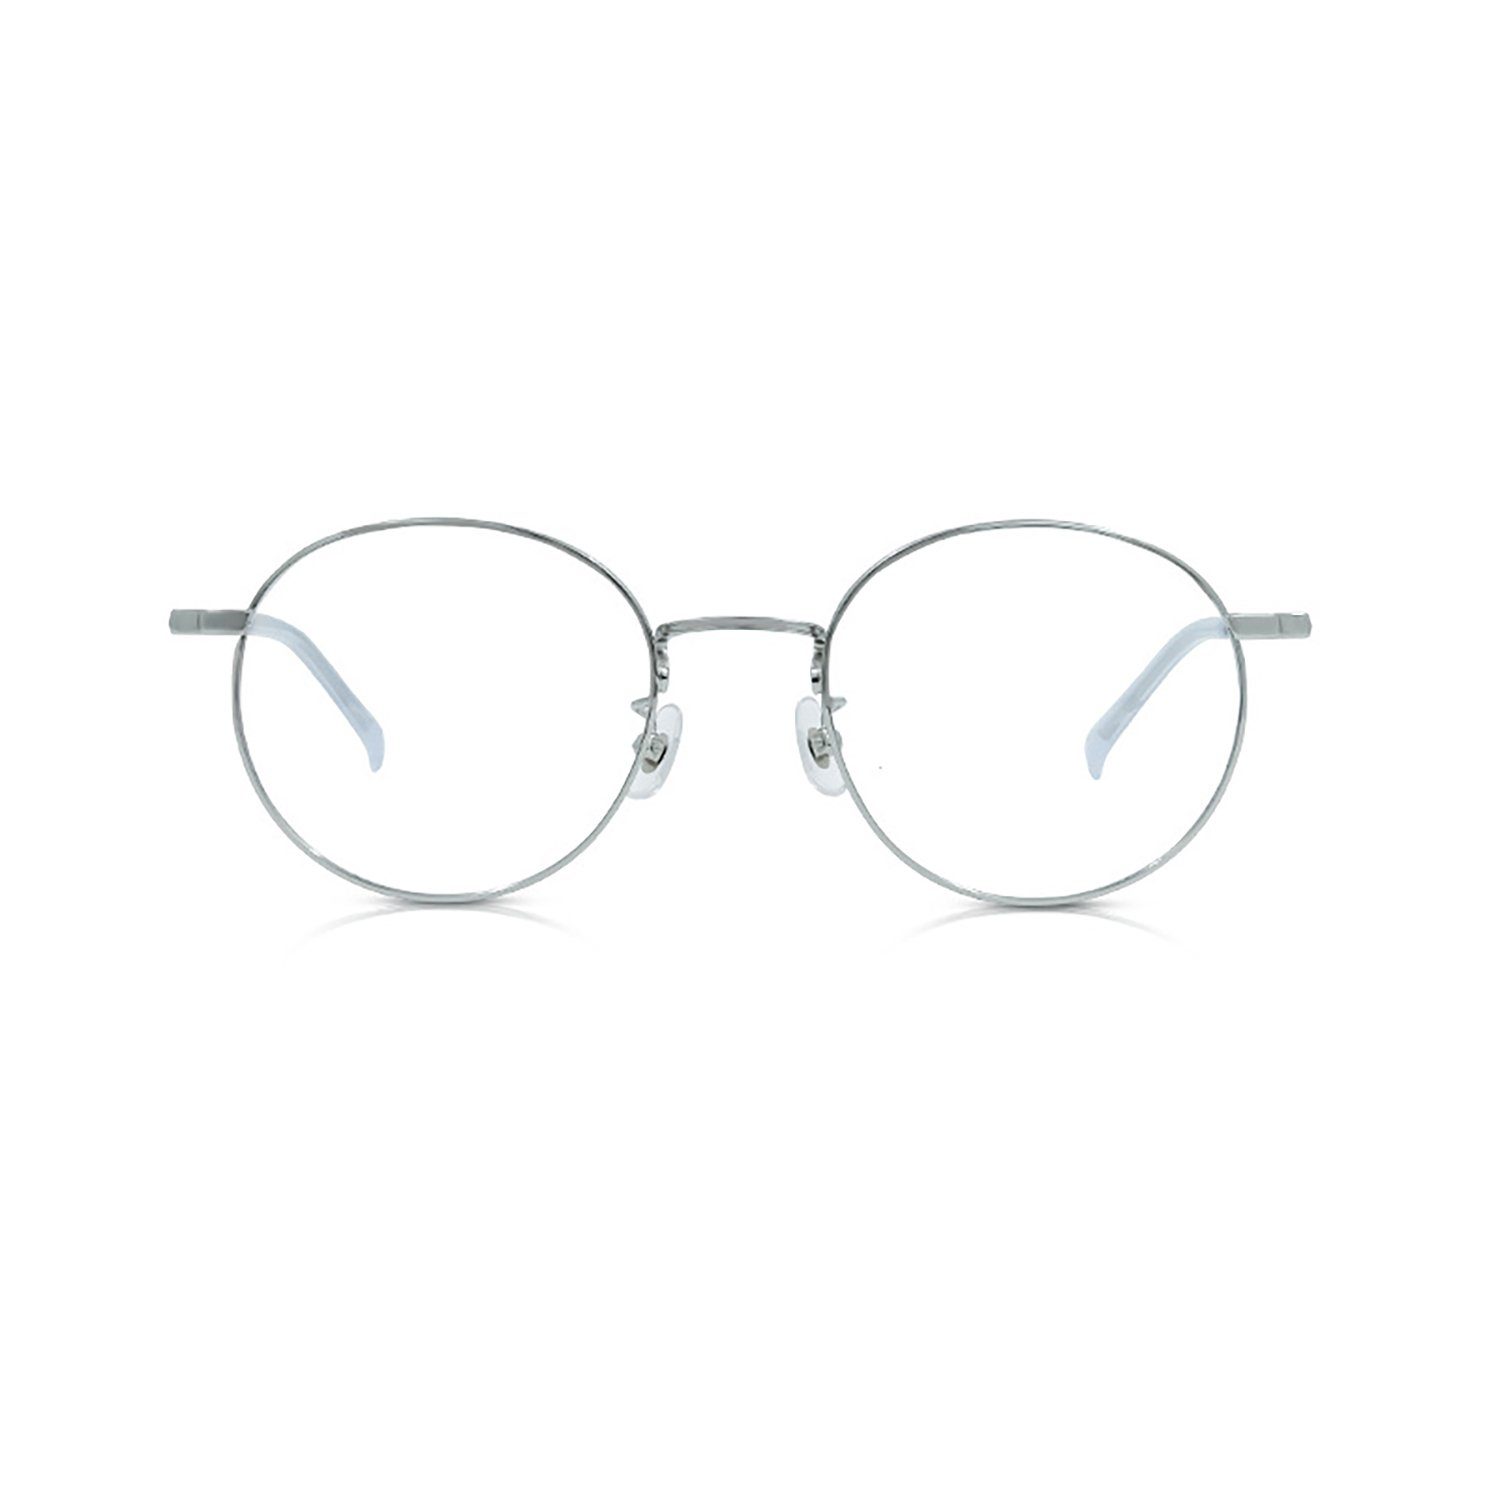 yozhiqu Brille Retro-Kosmetikbrillengestell mit rundem Rahmen in Roségold, ideal für schlanke optische Augenspiegelrahmen